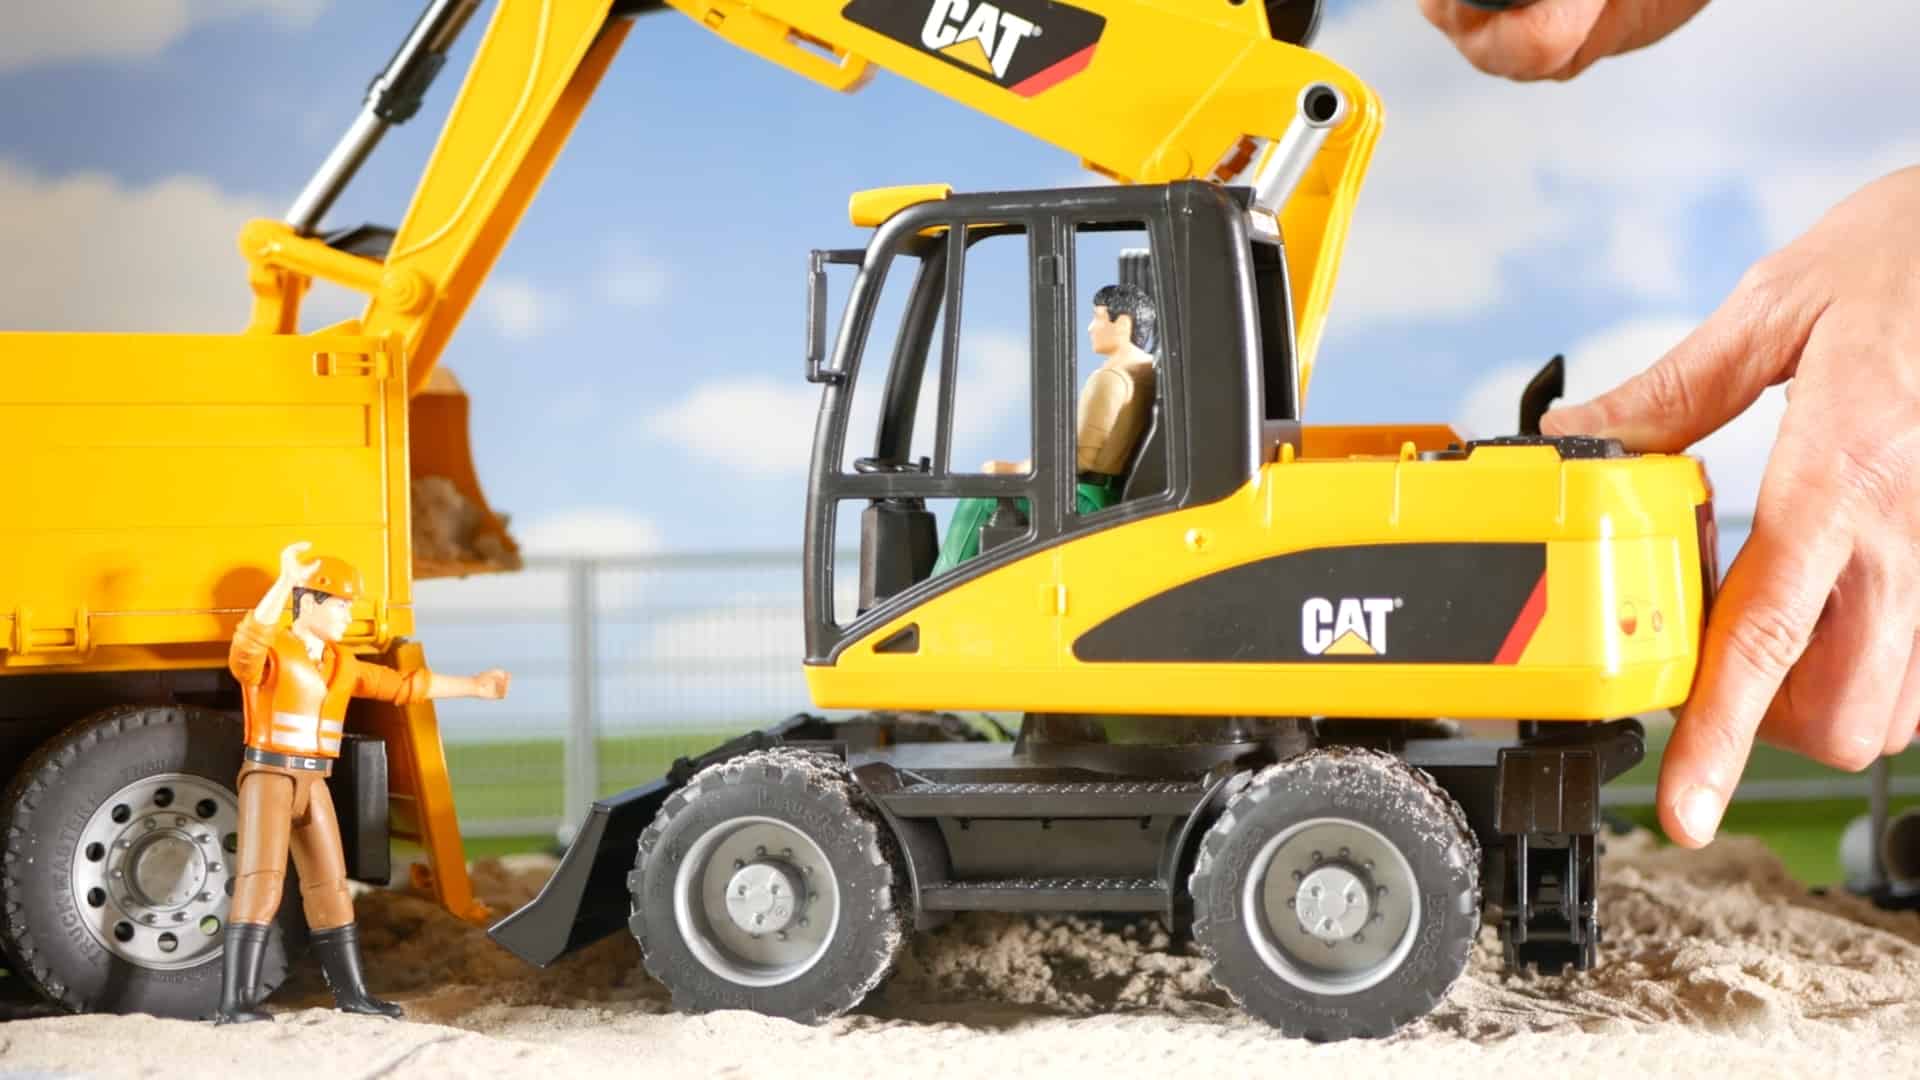 Mejor excavadora: Excavadora de ruedas pequeñas Bruder 02446 Cat